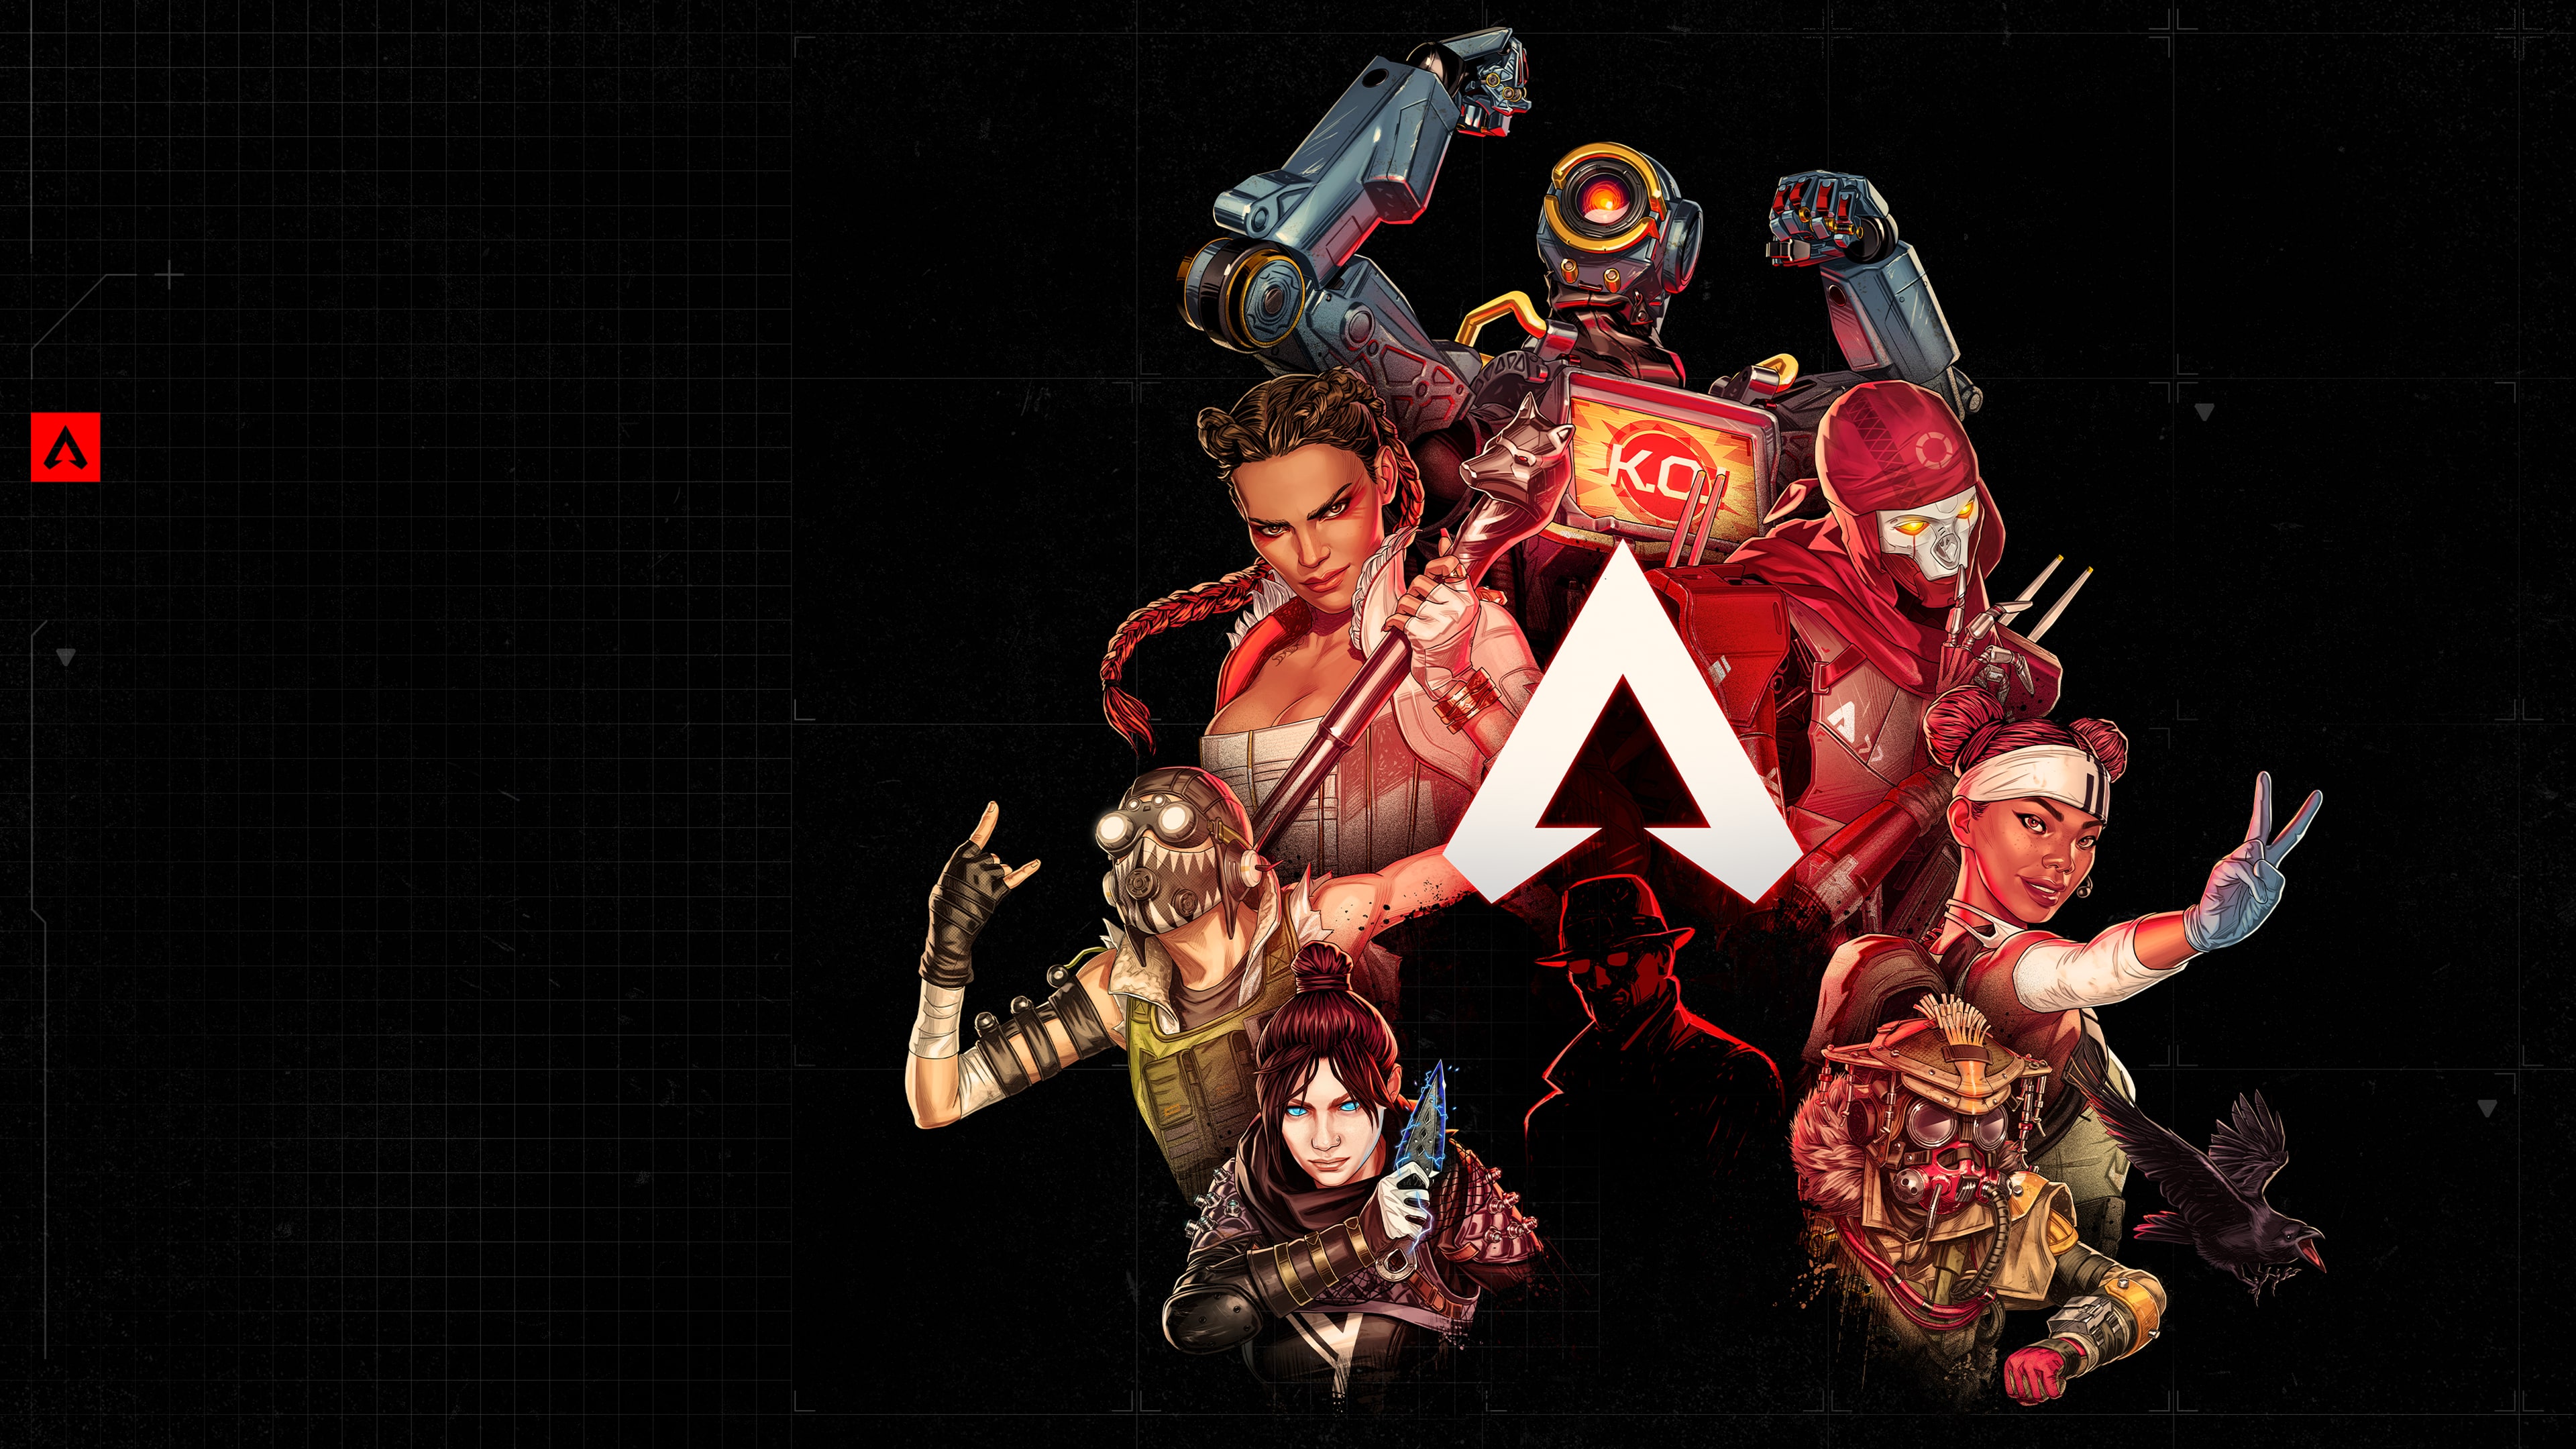 Apex Legends™‎ PS4™